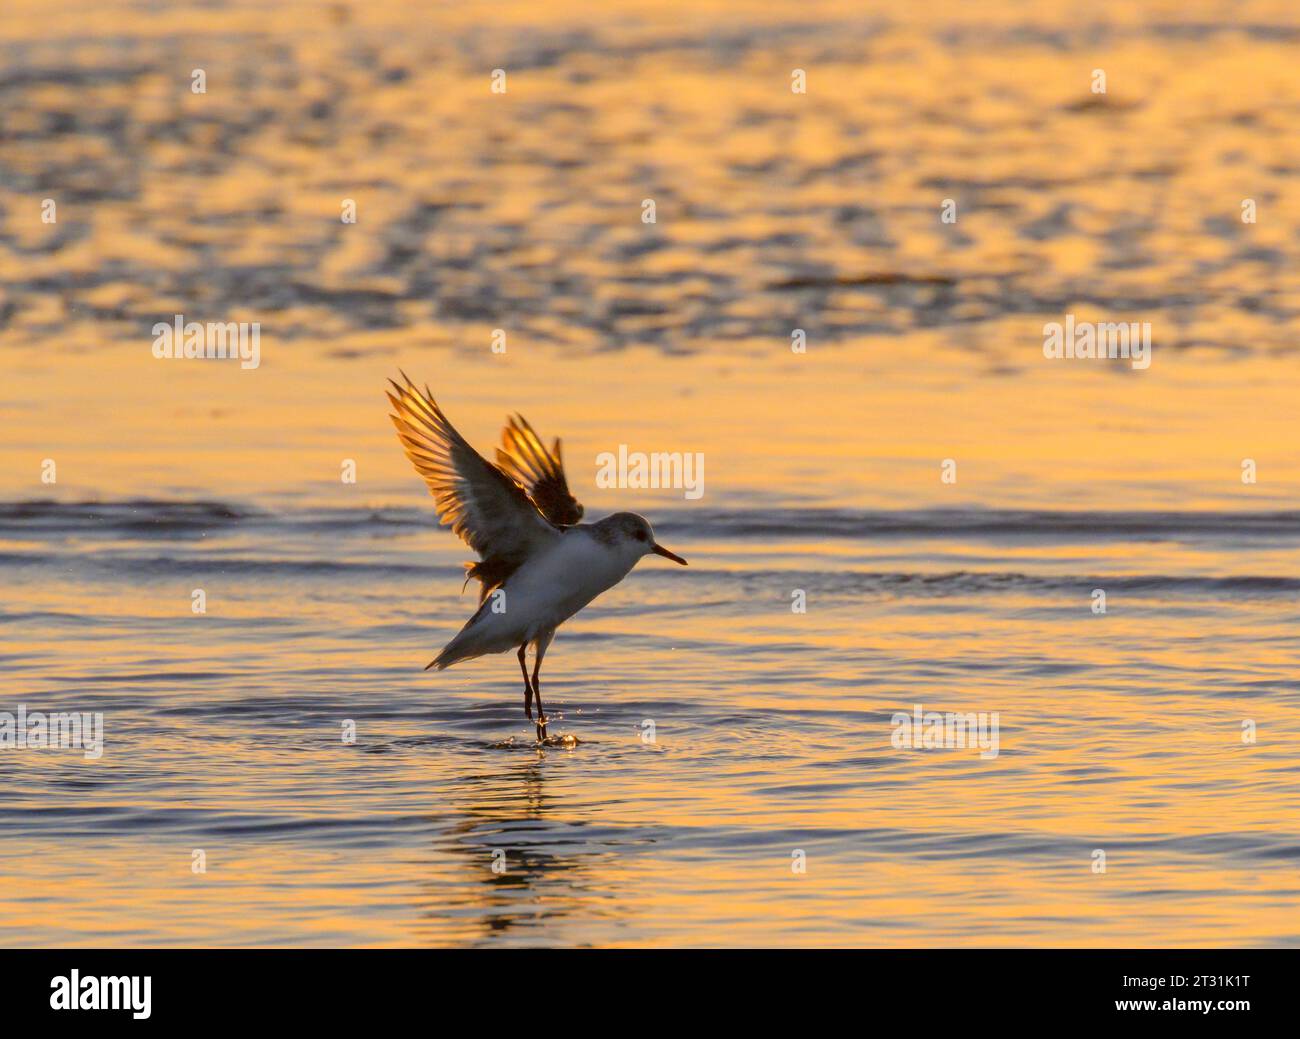 The Morning Splash: Sanderling (Calidris alba) wäscht und spritzt seine Federn am frühen Morgen im Ozean, Galveston, Texas, USA. Stockfoto